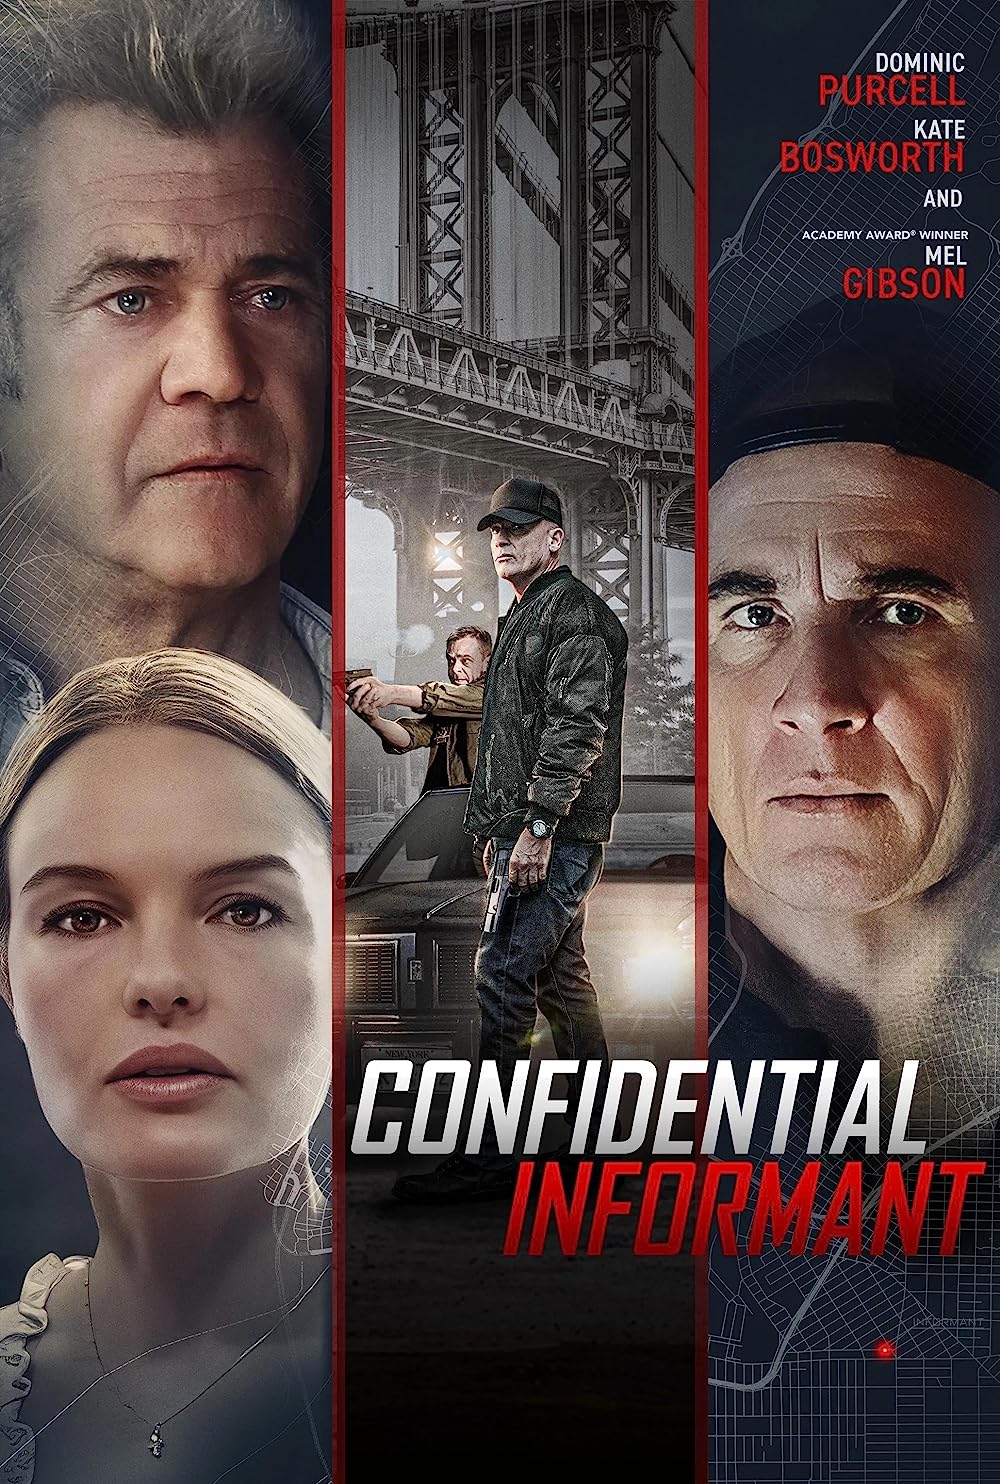 فیلم خبرچین محرمانه Confidential Informant